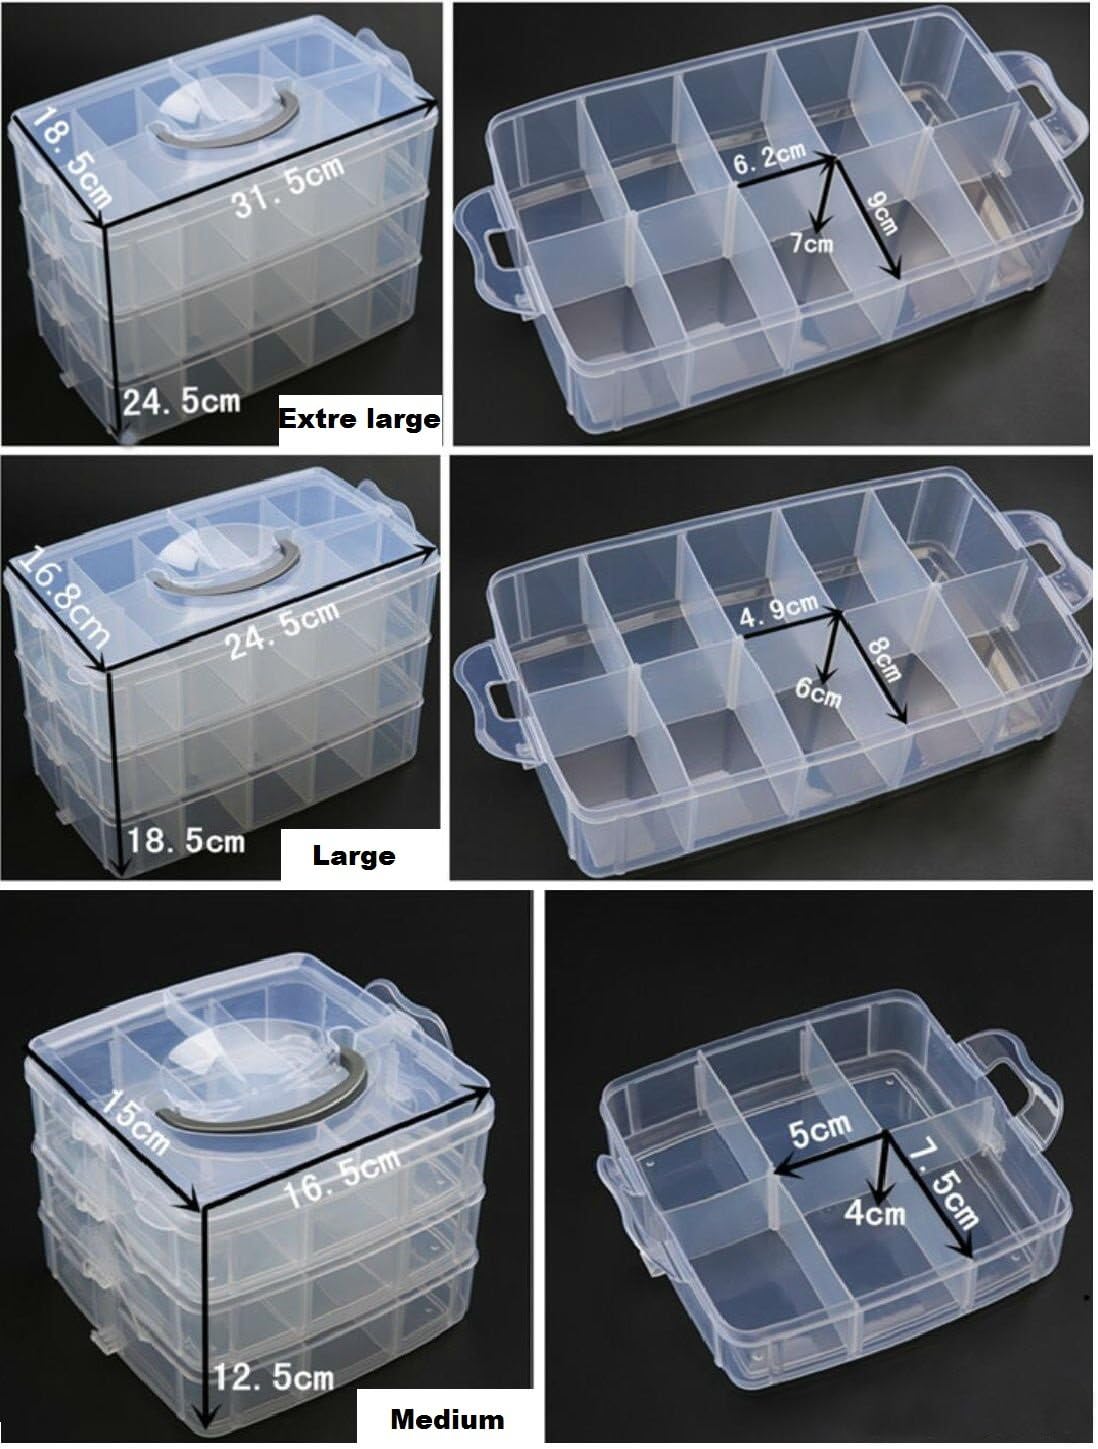 Caja organizadora de plástico apilable de 3 niveles y 30 secciones, co -  VIRTUAL MUEBLES